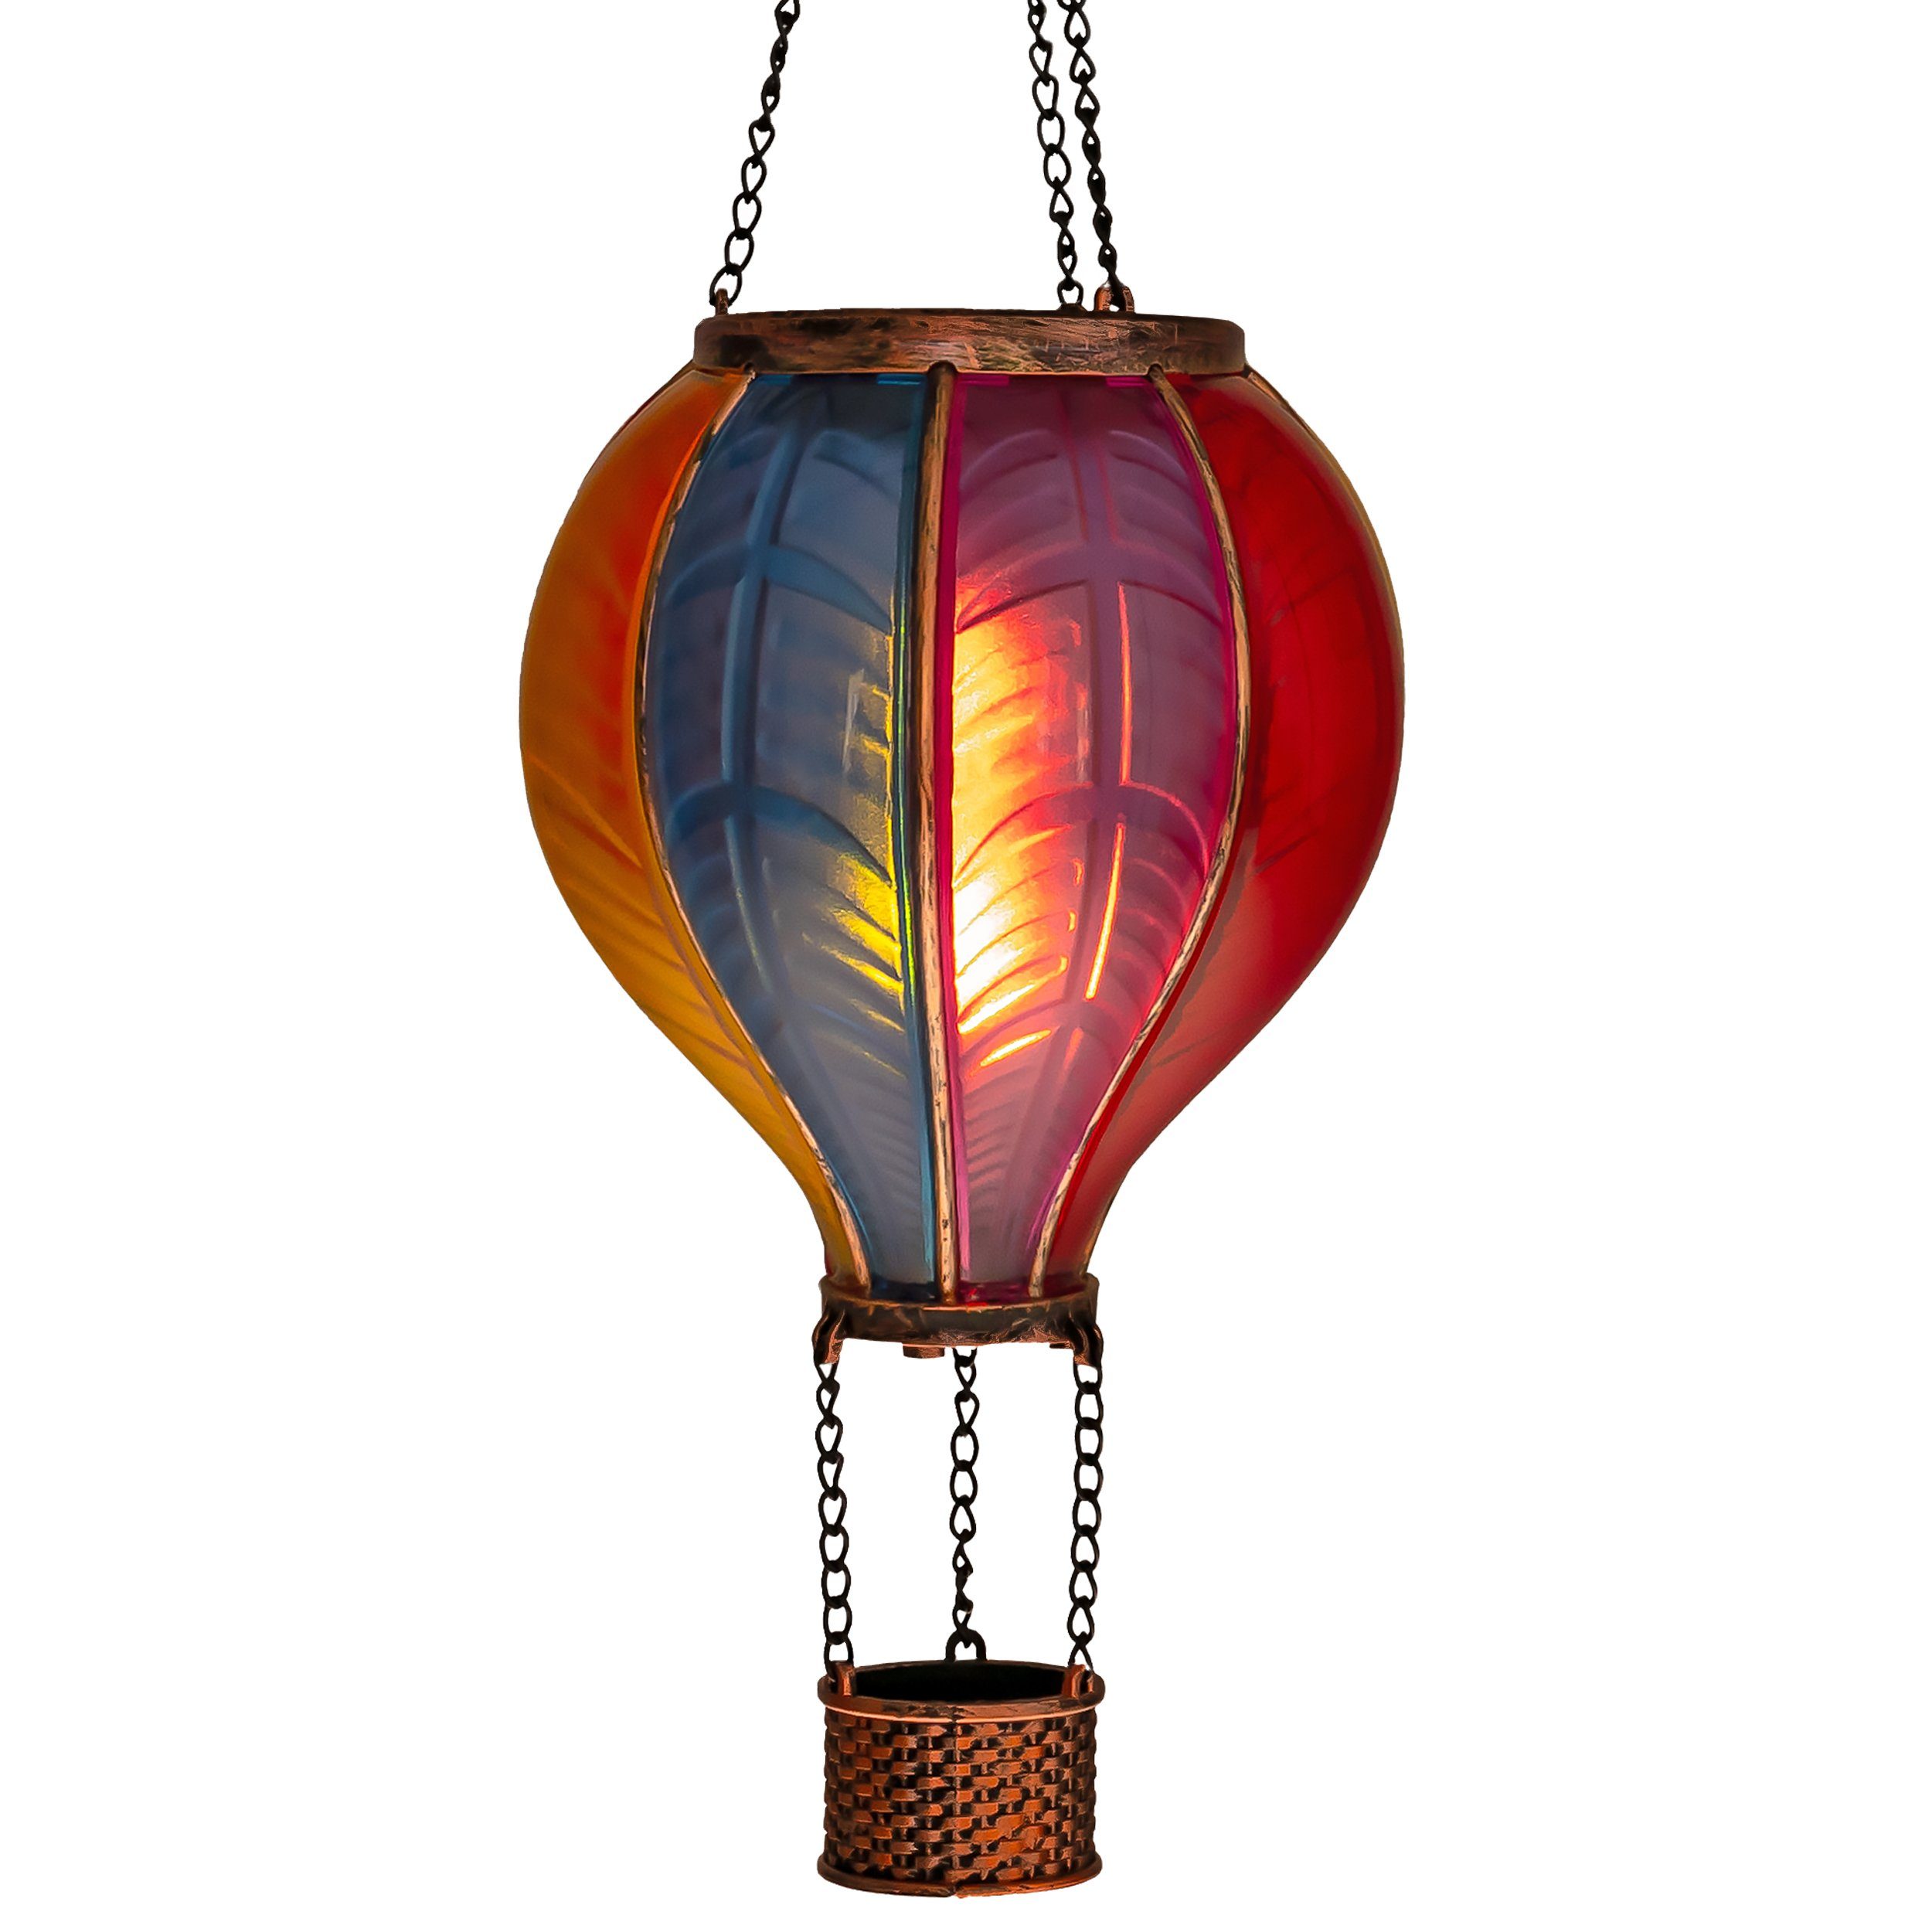 IC Gardenworld LED Solarleuchte LED Solar Heißluftballon mit Flammeneffekt Beleuchtung zum Aufhängen, LED fest integriert, warm-weiß mit Flammeneffekt, 20 warm-weiße Lichter, inkl. Metallkette, Gesamthöhe ca. 40,5 cm Regenbogenfarben